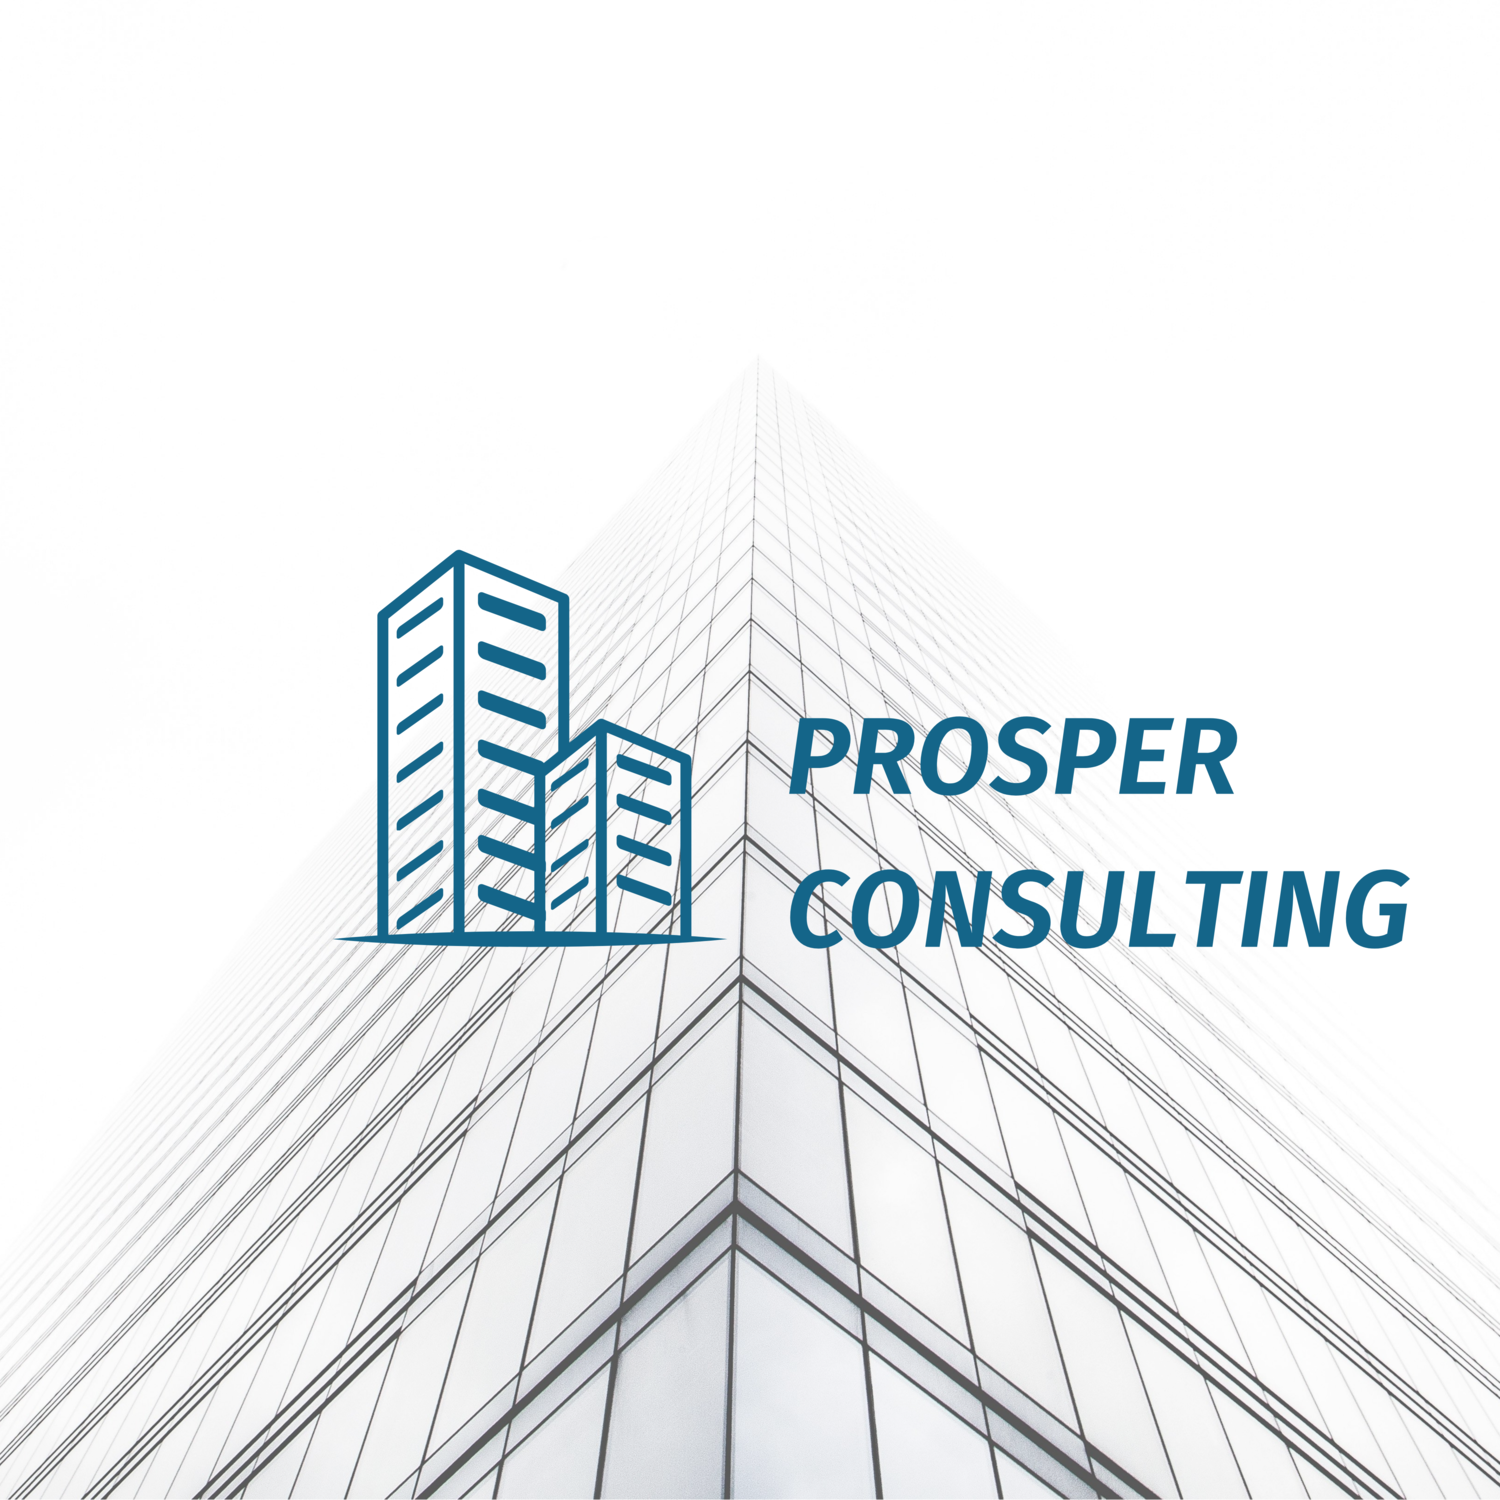 Prosper Consulting 